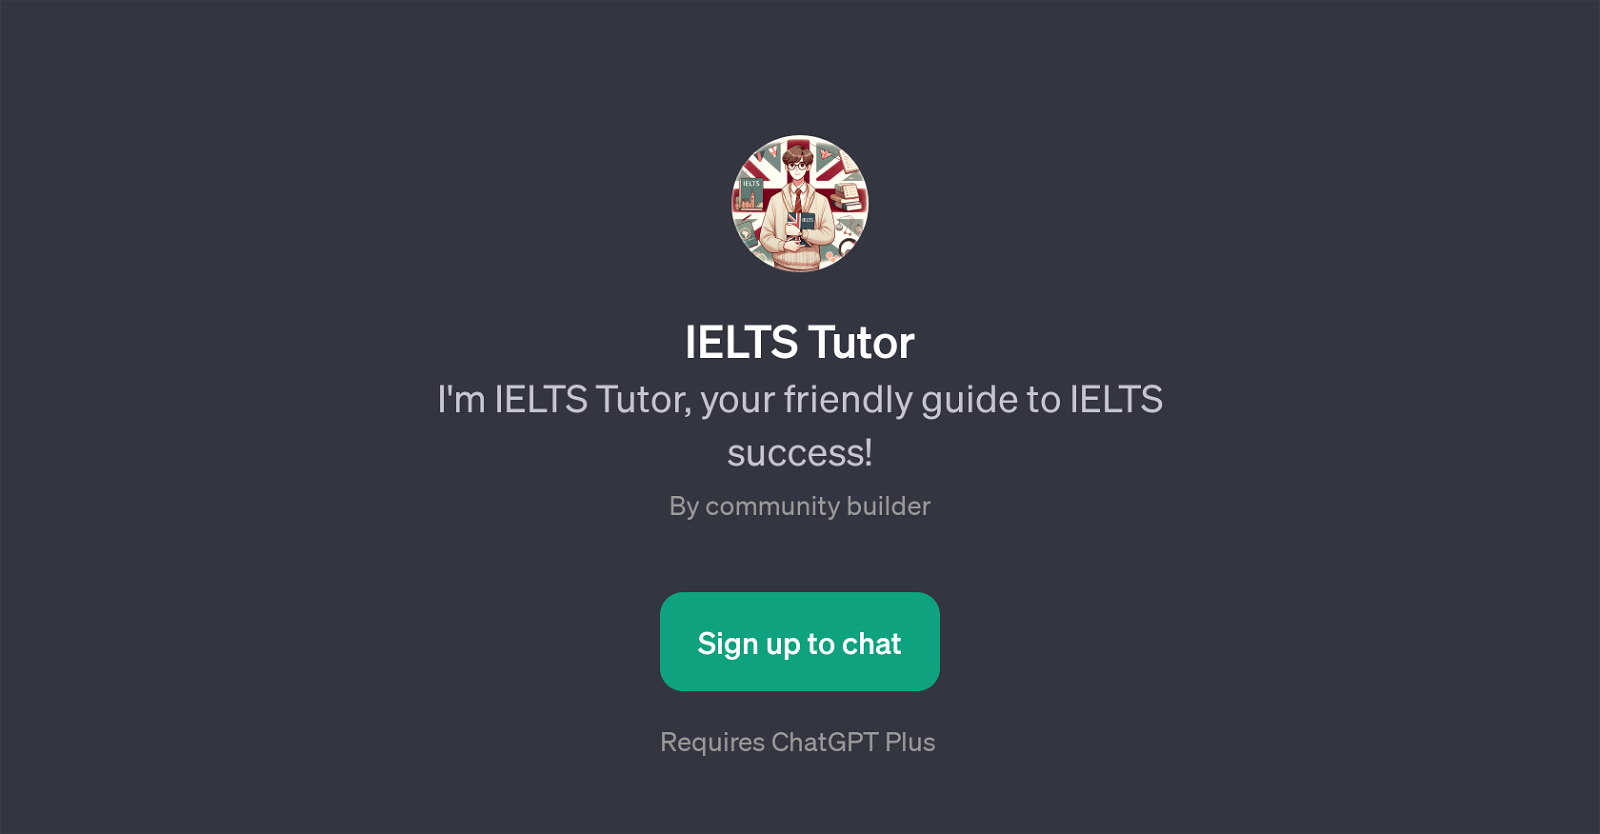 IELTS Tutor website